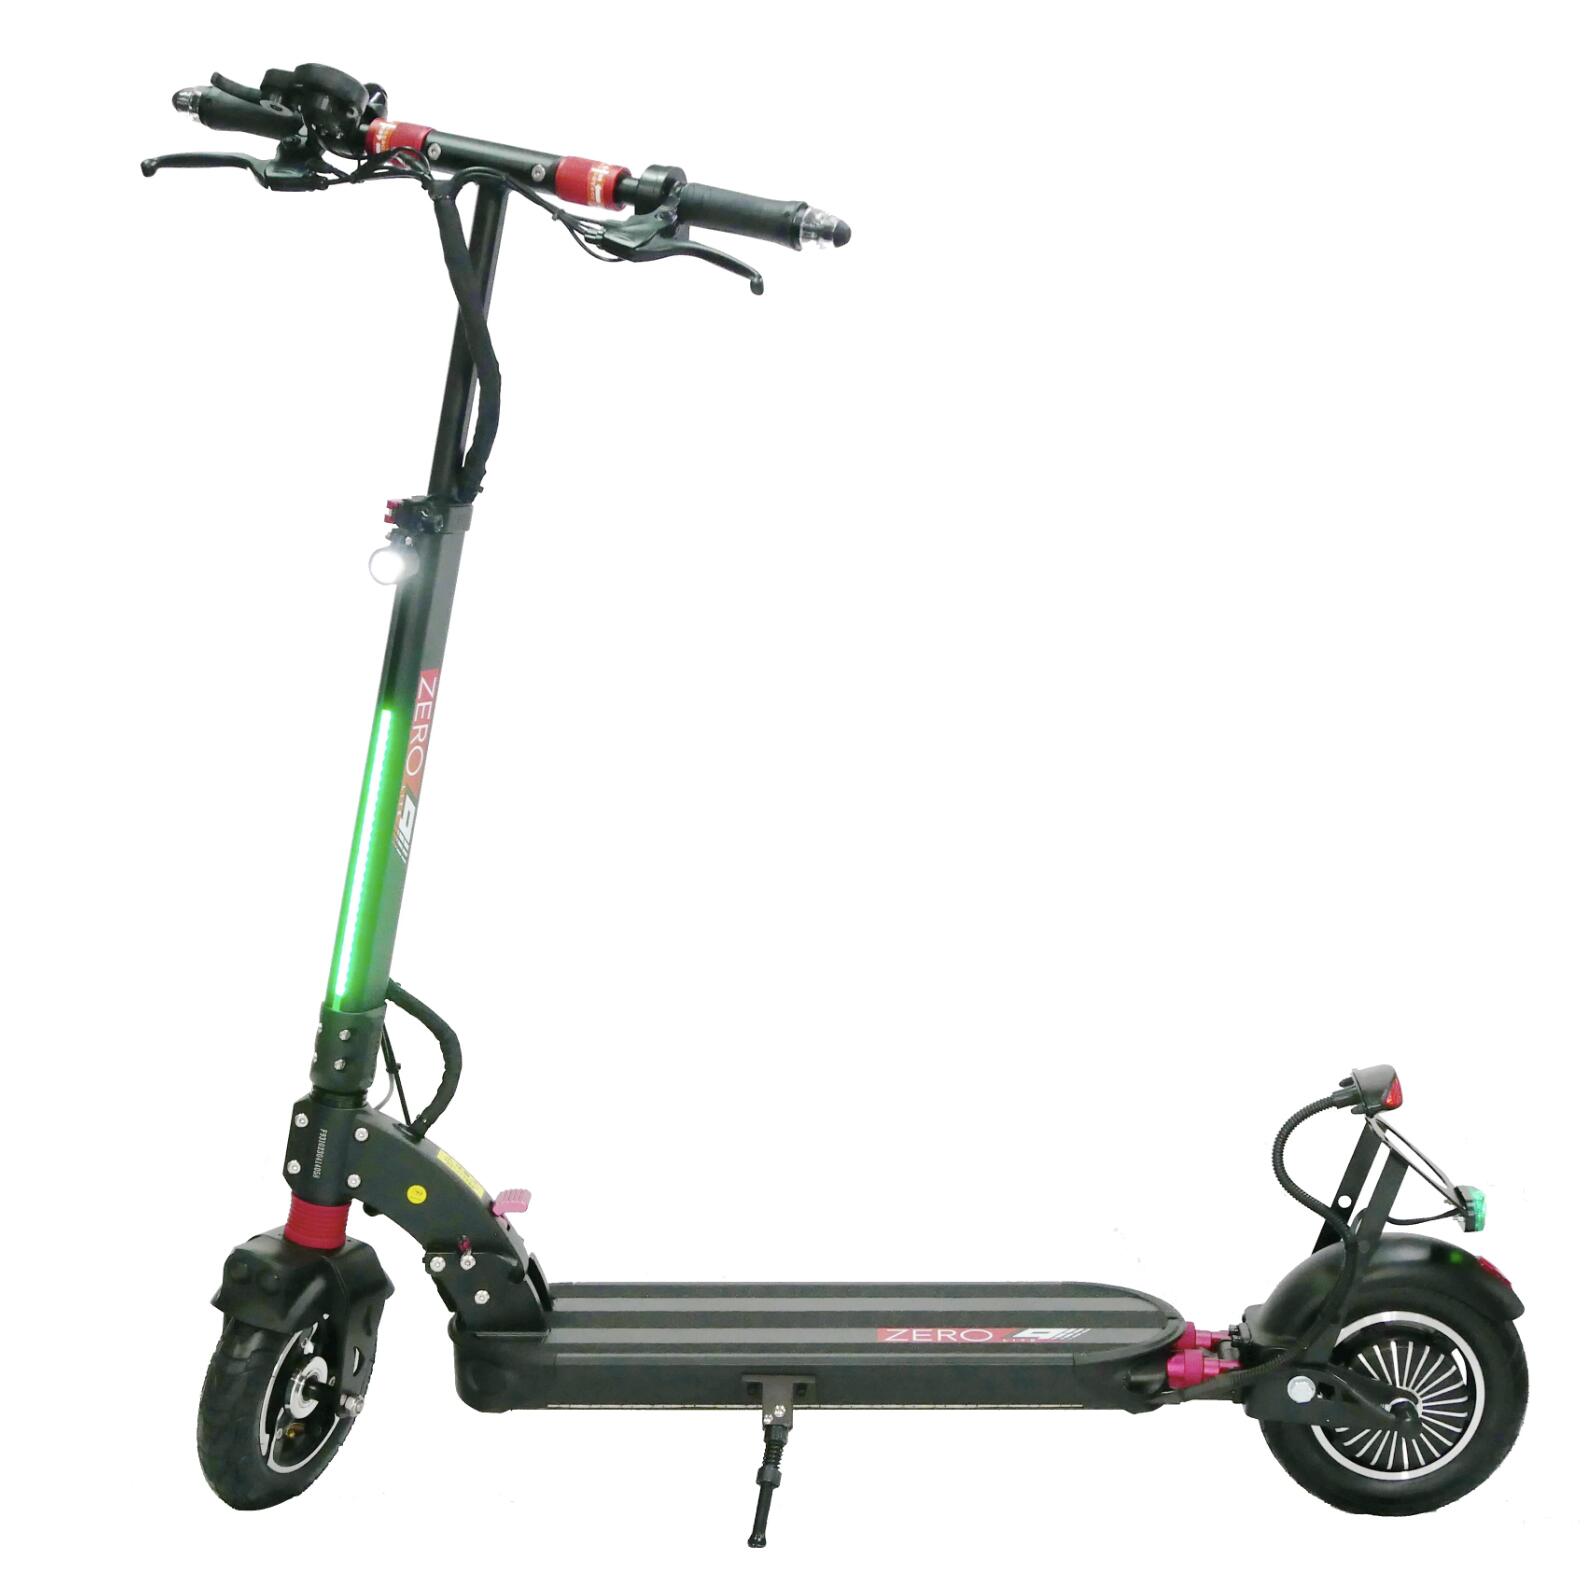 免許不要モデル公道走行可能電動キックボードZERO9Lite特定小型原動機付自転車